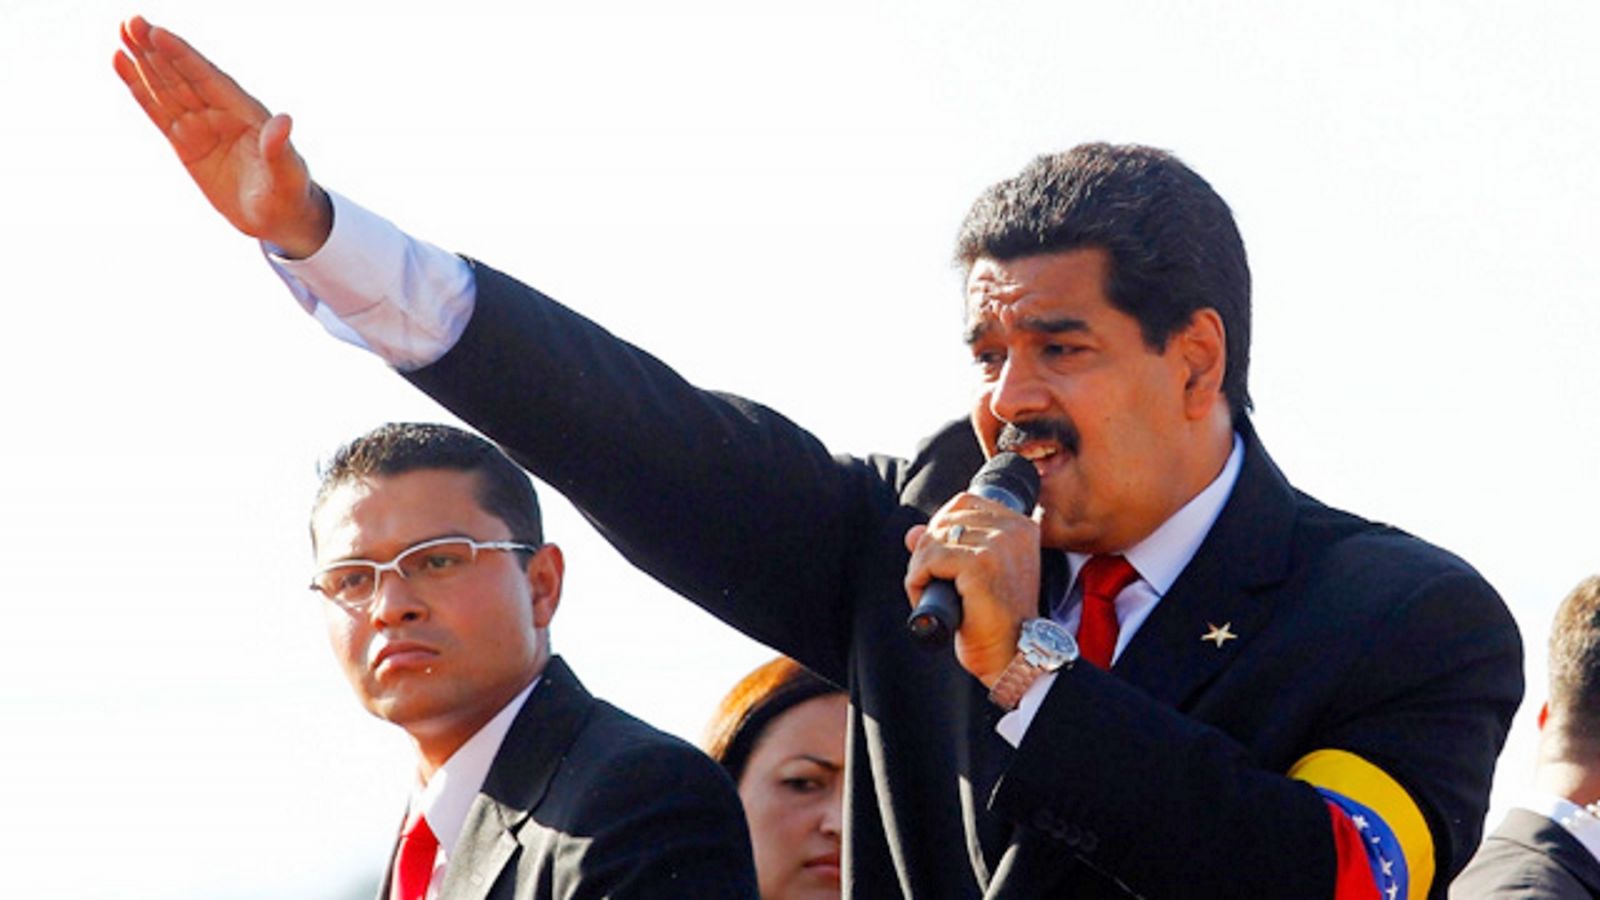 Maduro se convierte en un peligroso dictador | La Portada Canadá